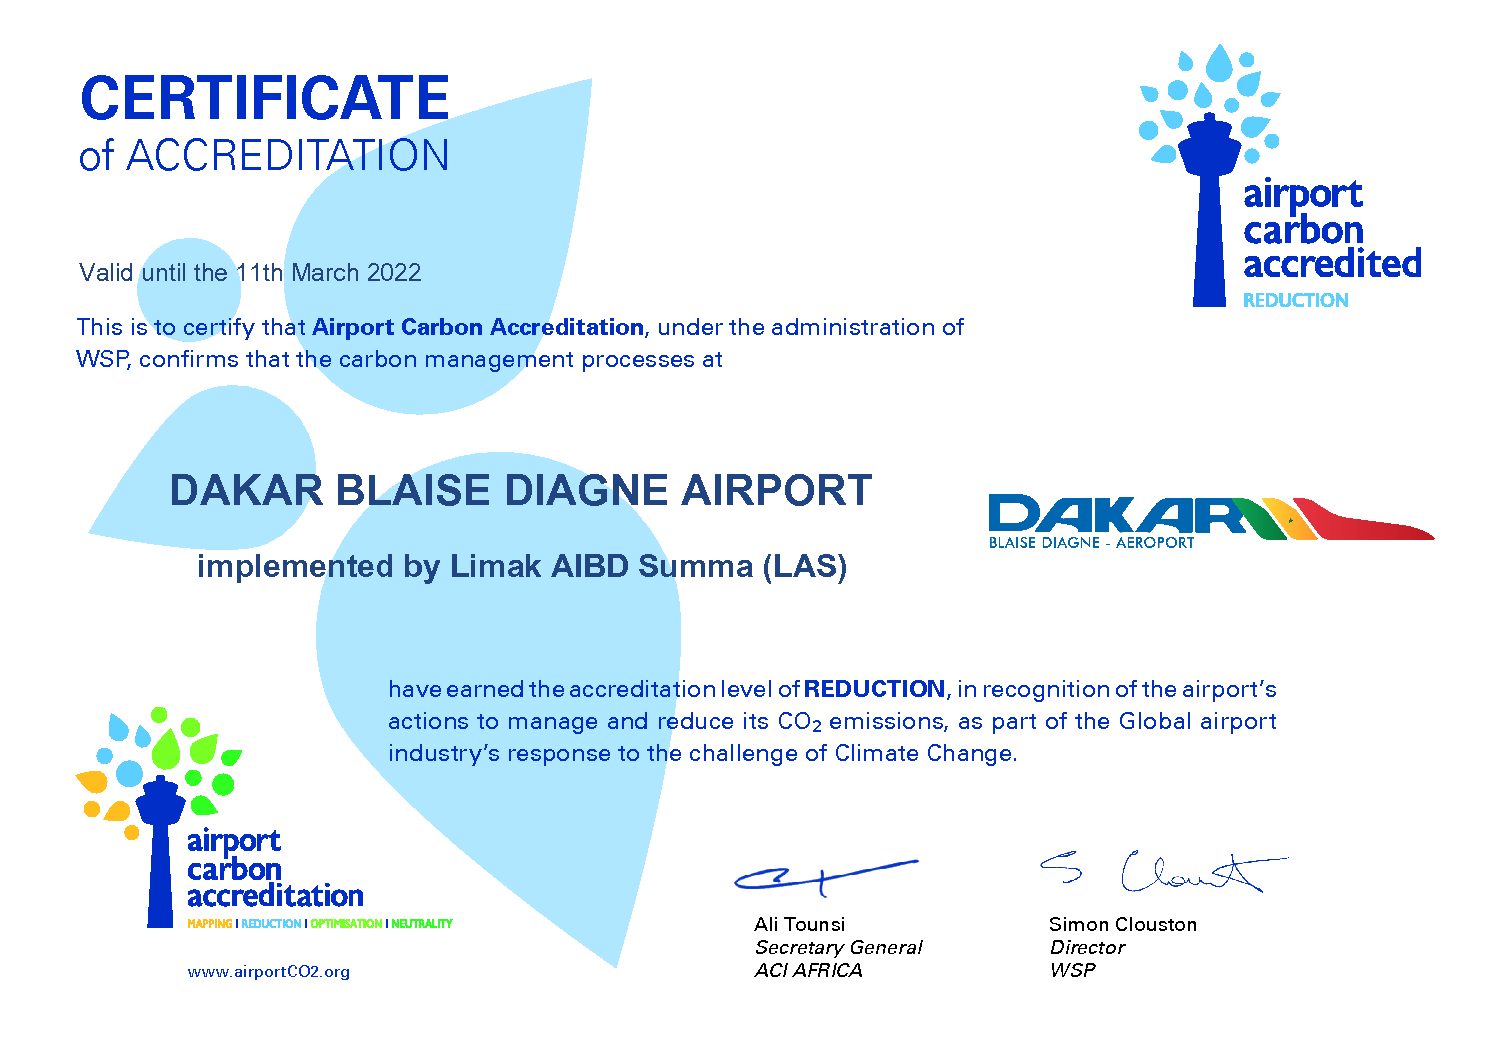 Airport Carbon Accreditation niveau 2 : L’aéroport Dakar Blaise Diagne a réussi à réduire ses émissions de carbone